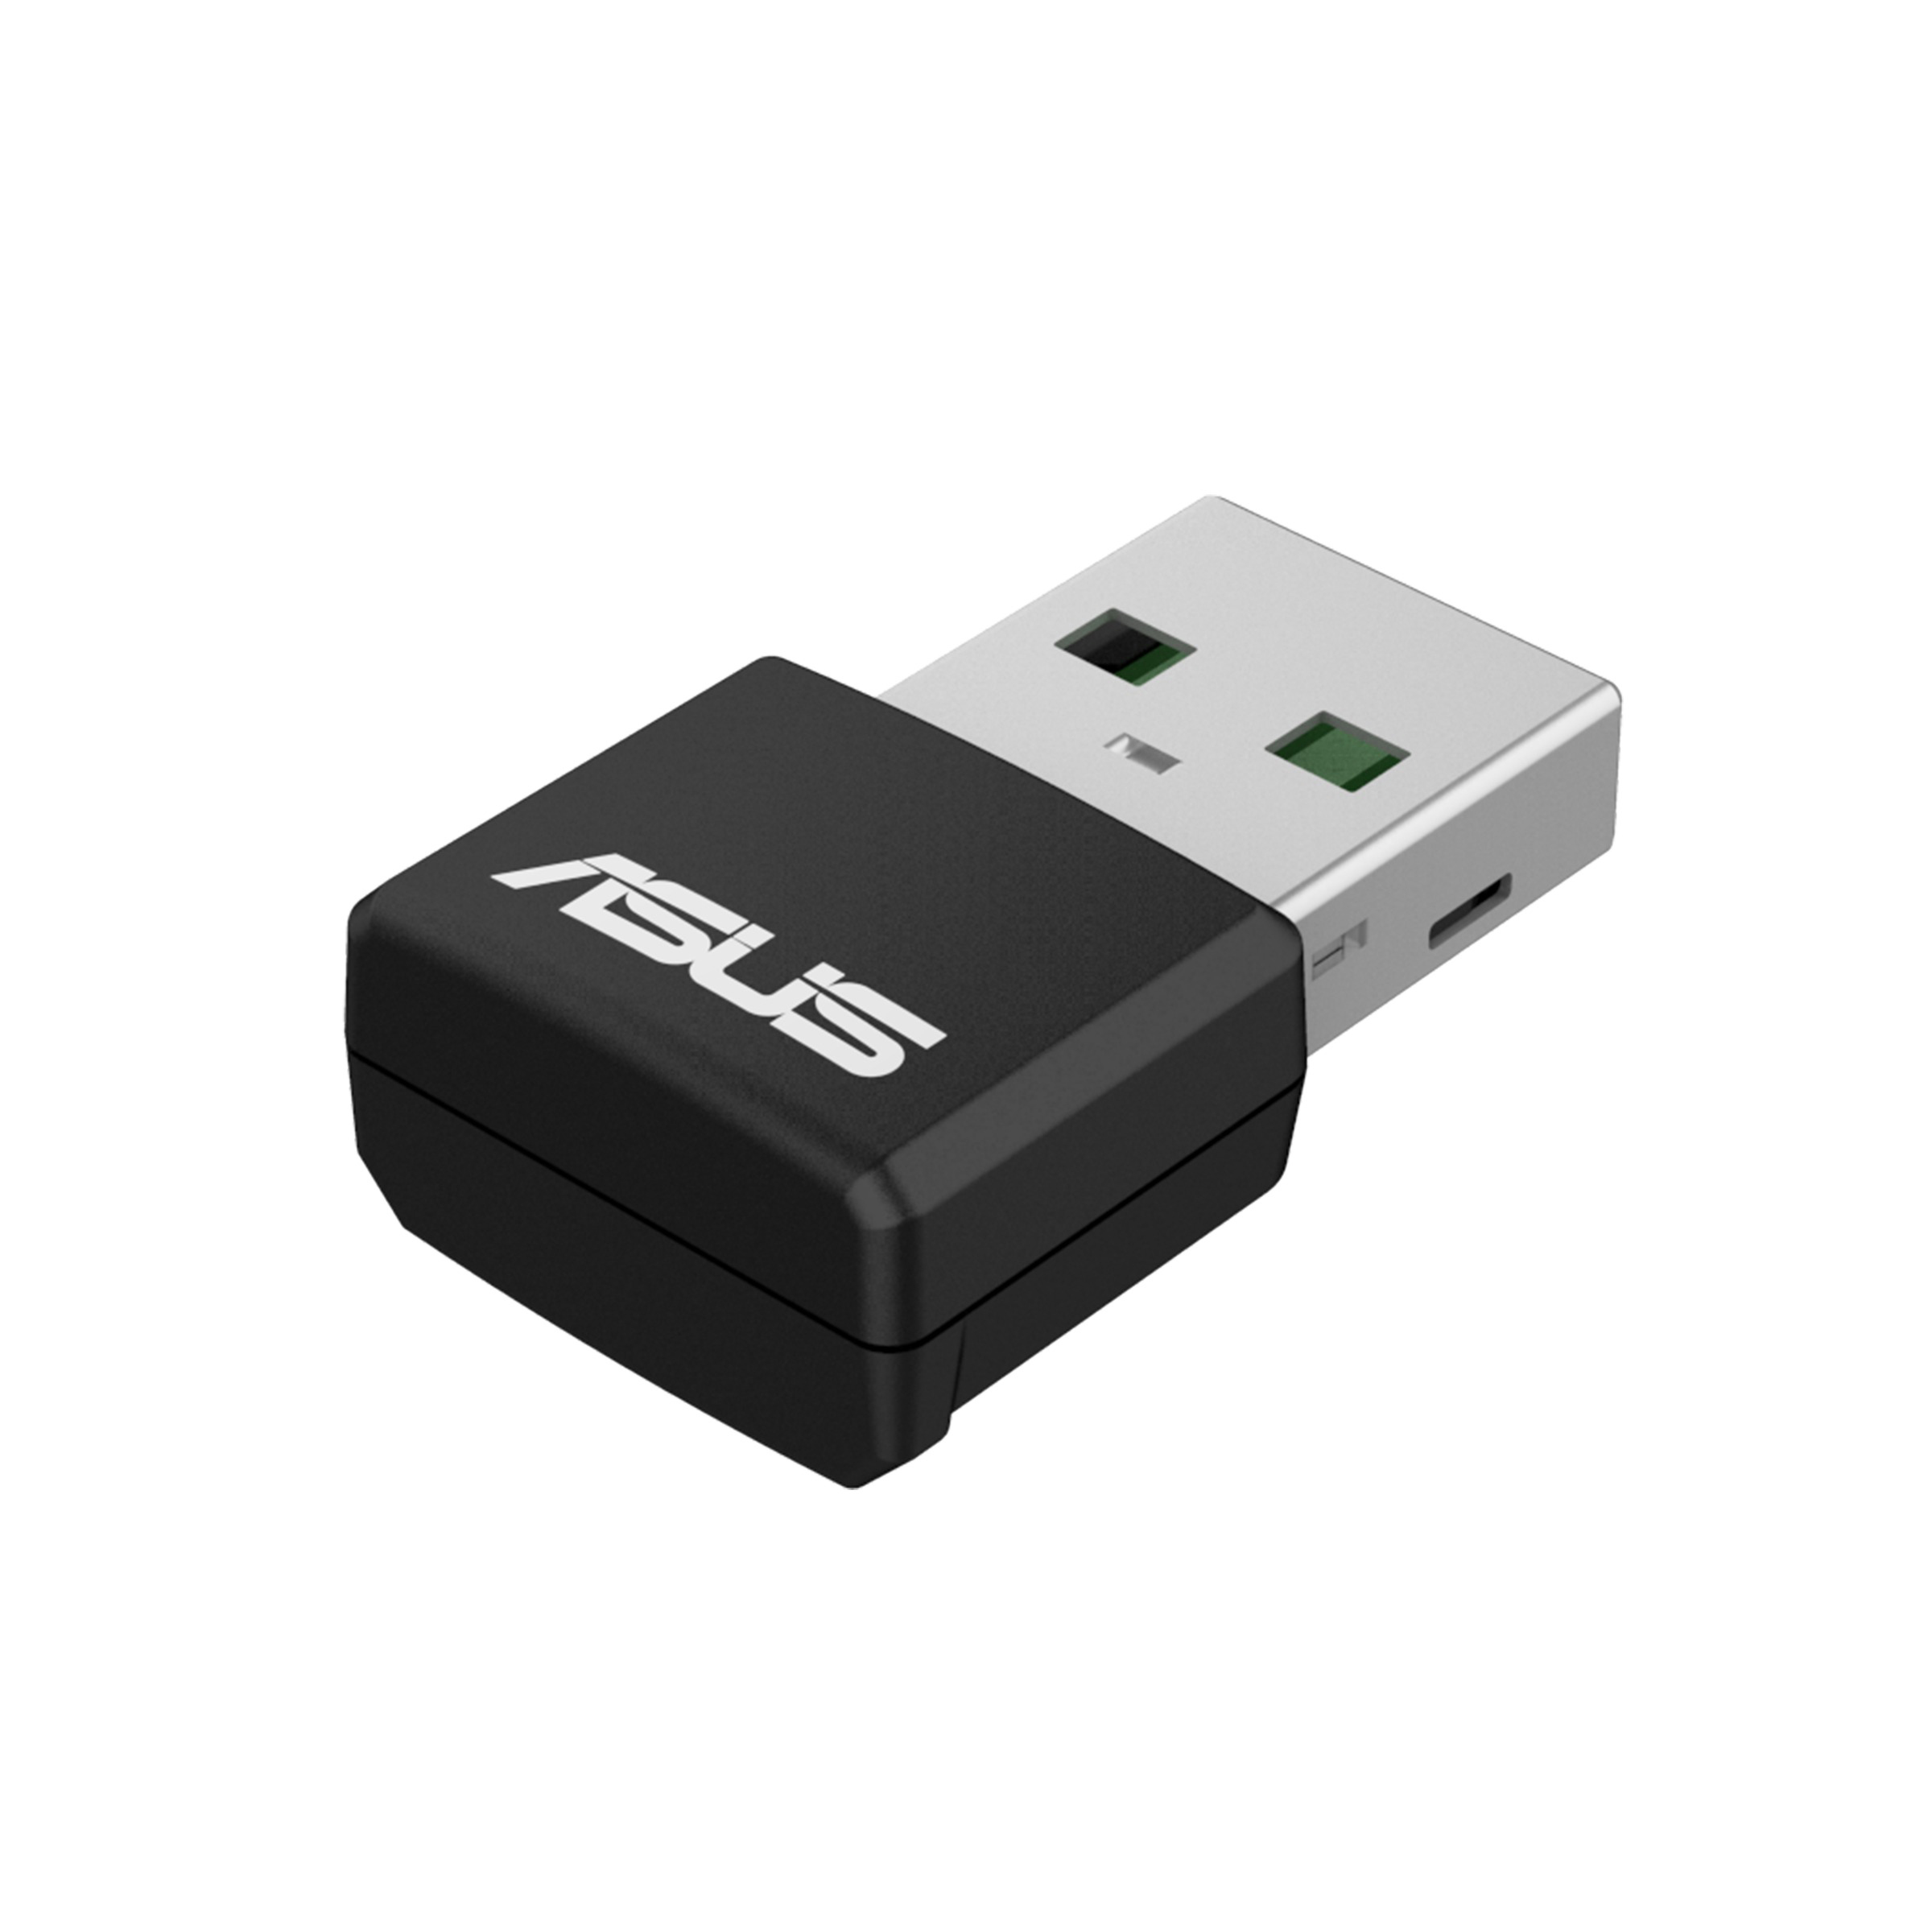 ASUS USB-AX55 Nano Adapter USB 6 AX1800 WiFi